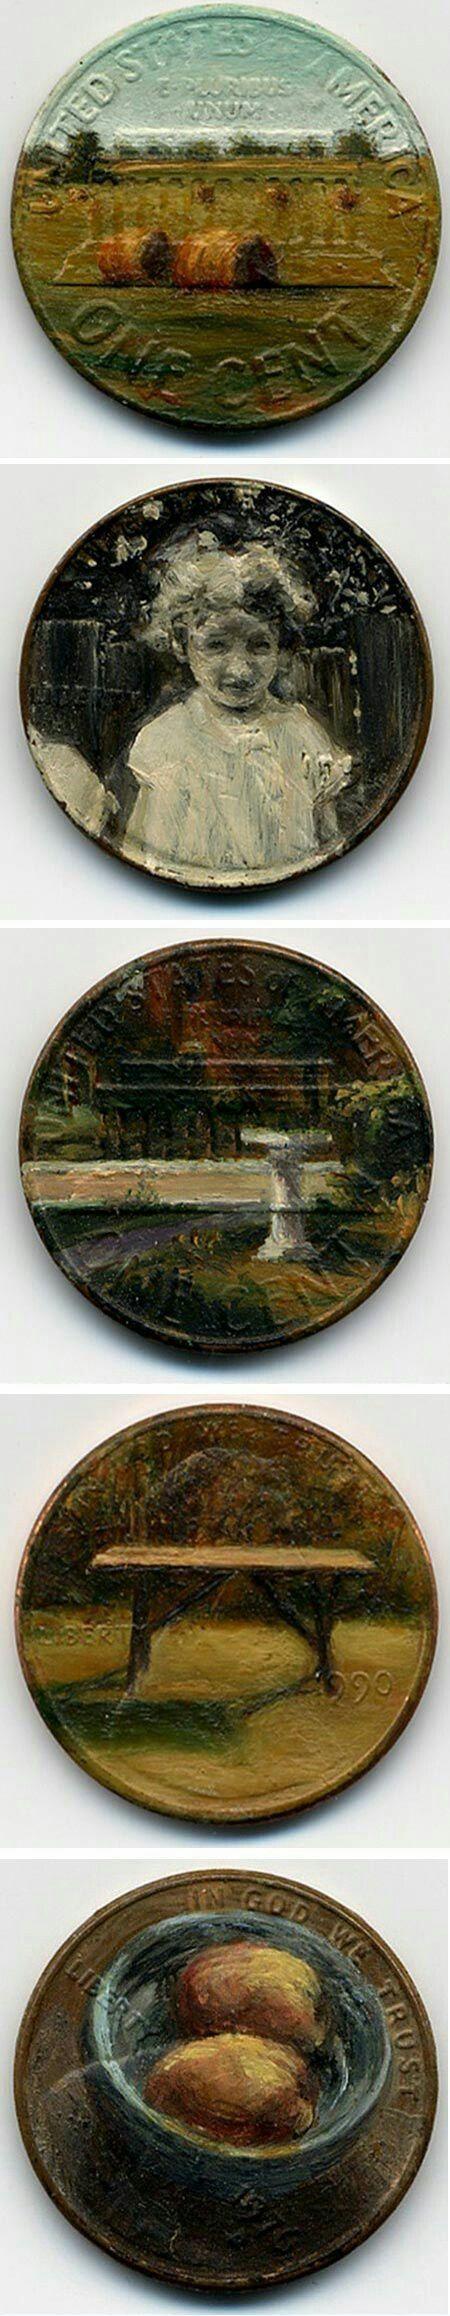 Beautiful paintings on pennies